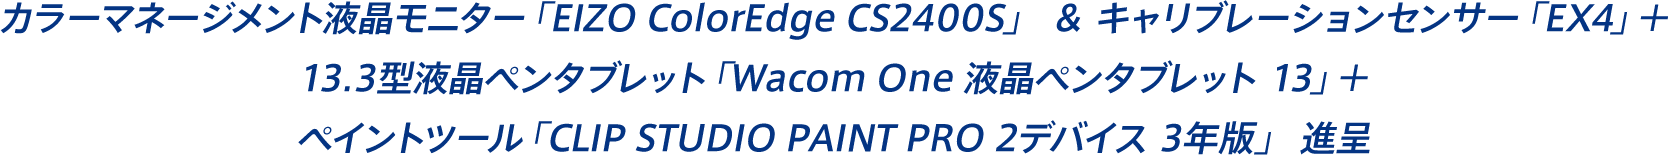 カラーマネージメント液晶モニター「EIZO ColorEdge CS2400S」 ＆ キャリブレーションセンサー「EX4」＋13.3型液晶ペンタブレット「Wacom One 液晶ペンタブレット 13」＋ペイントツール「CLIP STUDIO PAINT PRO 2デバイス 3年版」進呈